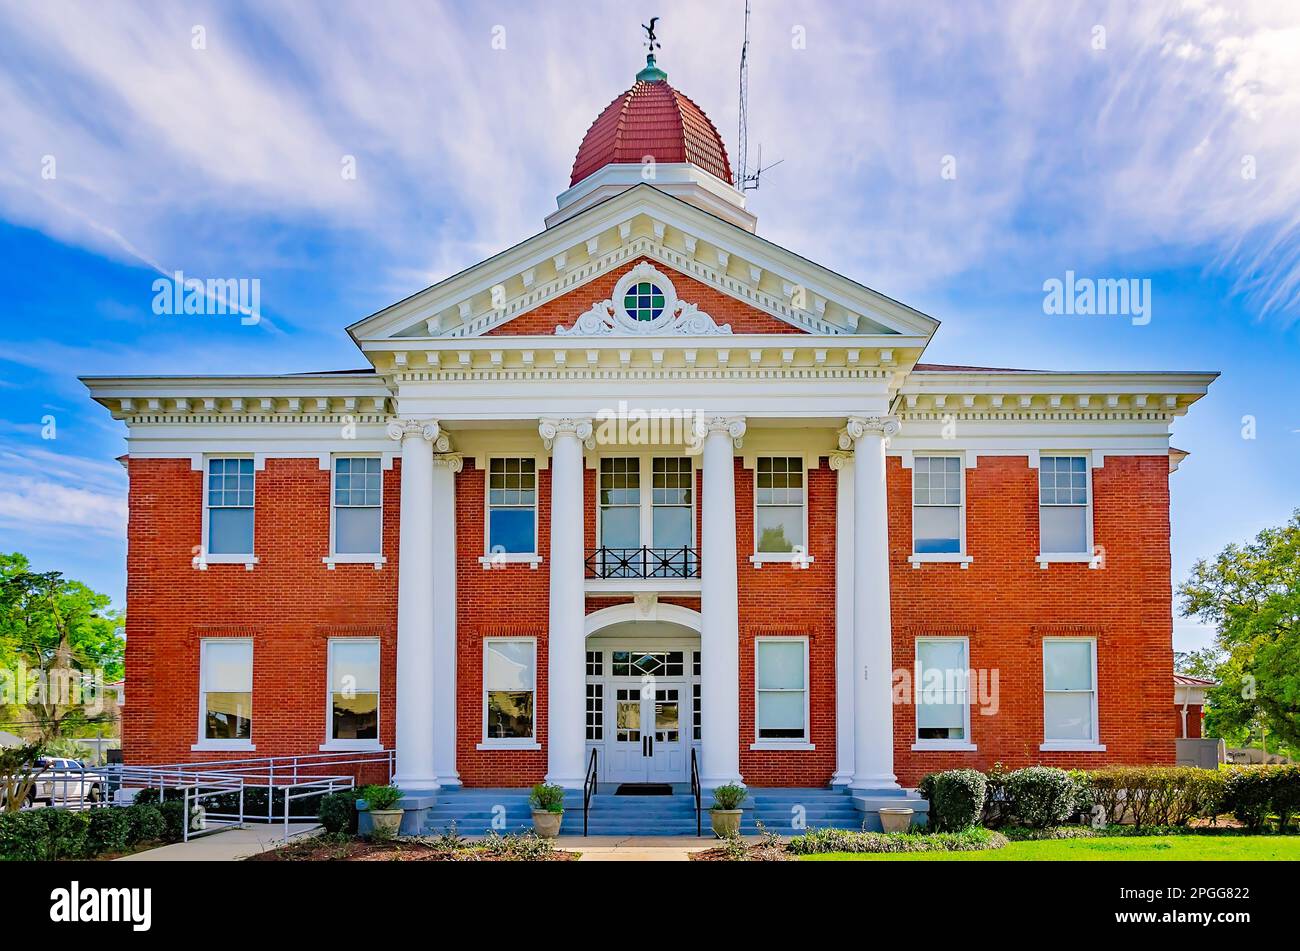 Das George County Courthouse ist am 20. März 2023 in Lucedale, Mississippi, abgebildet. Das neoklassizistische Gerichtsgebäude wurde 1911 erbaut. Stockfoto